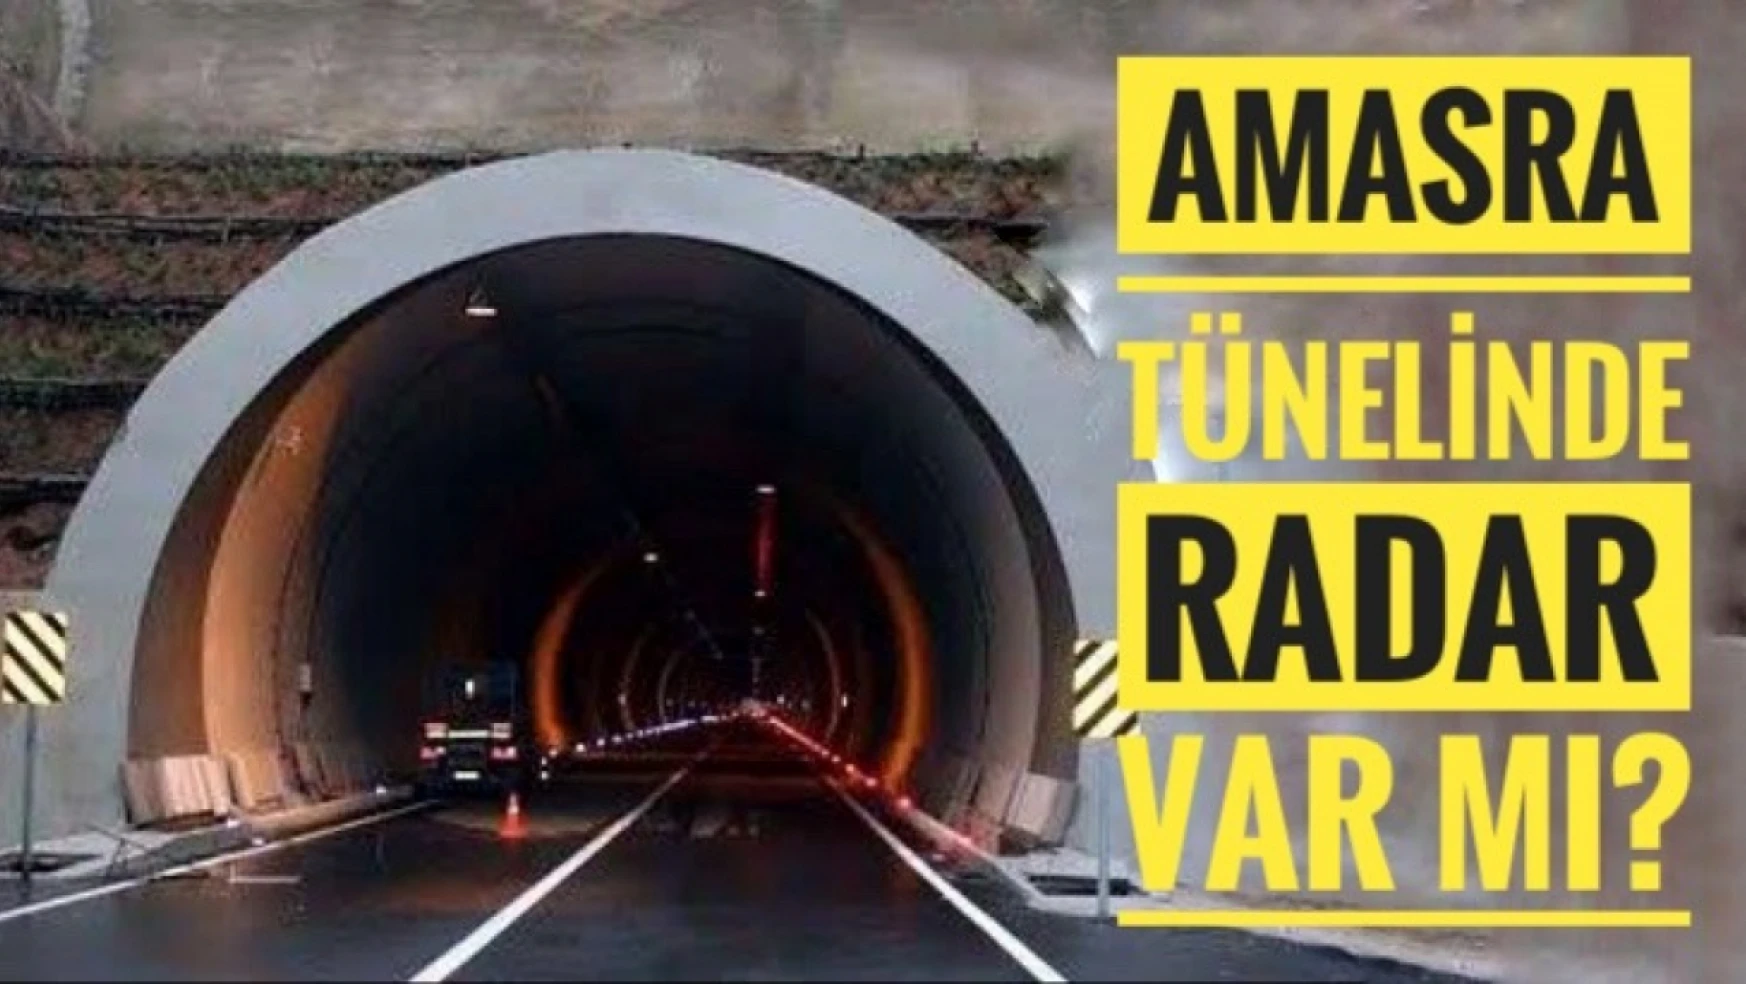 Amasra Tünelinde radar var mı?